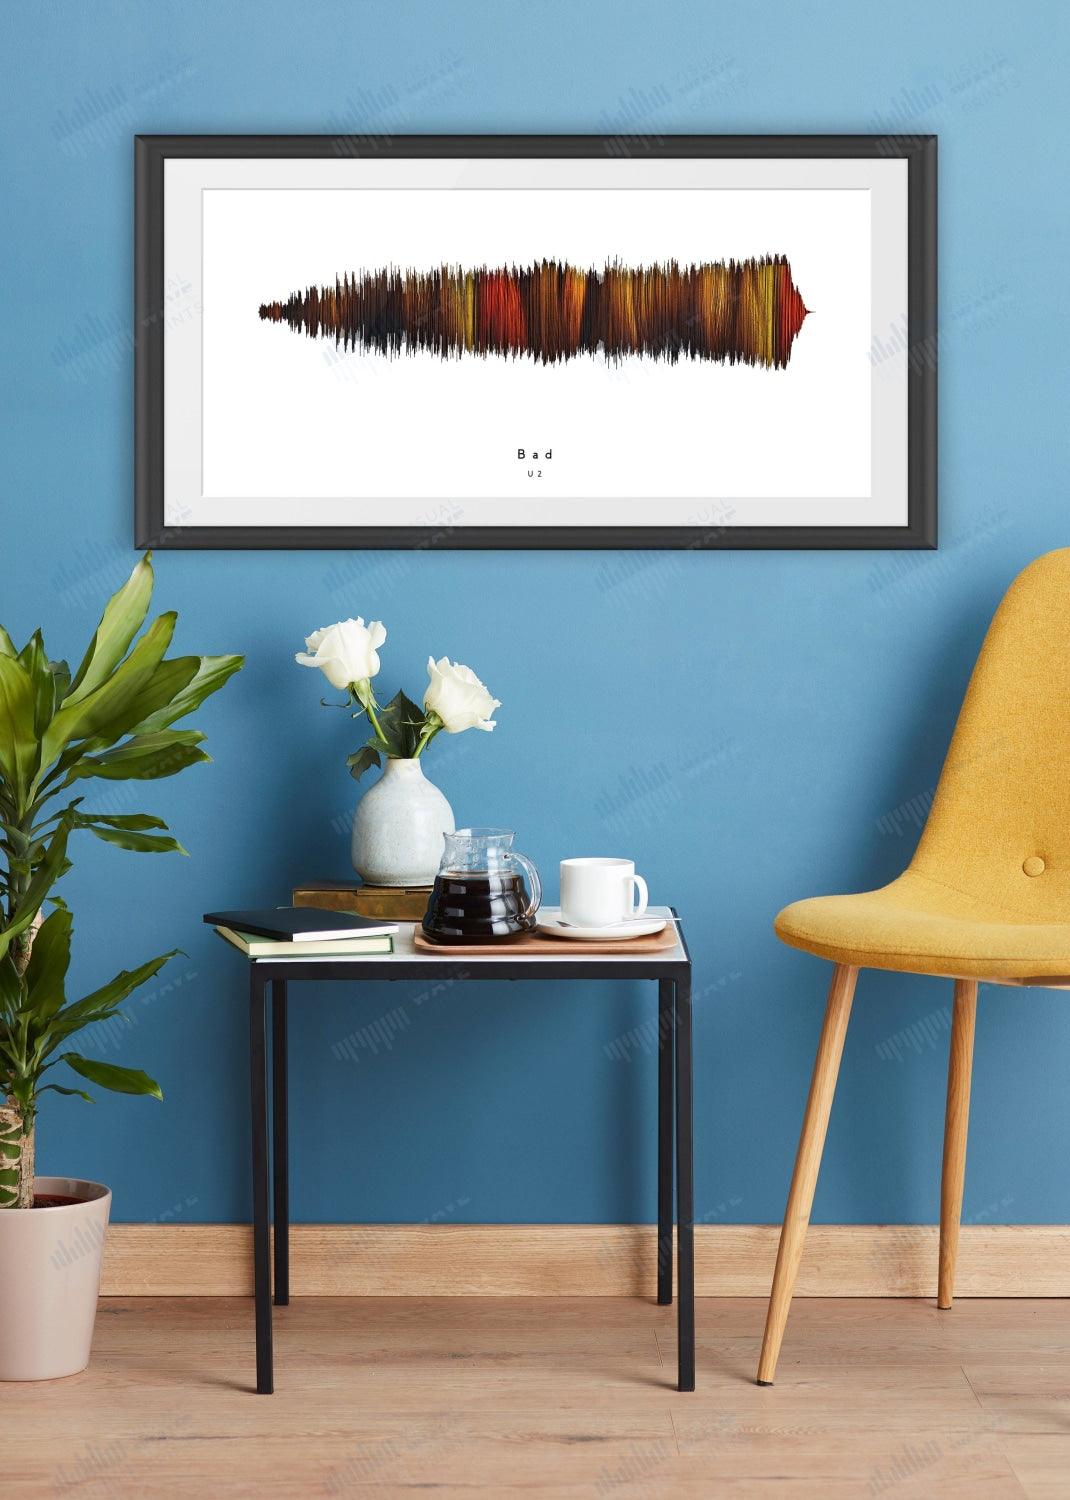 Bad by U2 - Visual Wave Prints